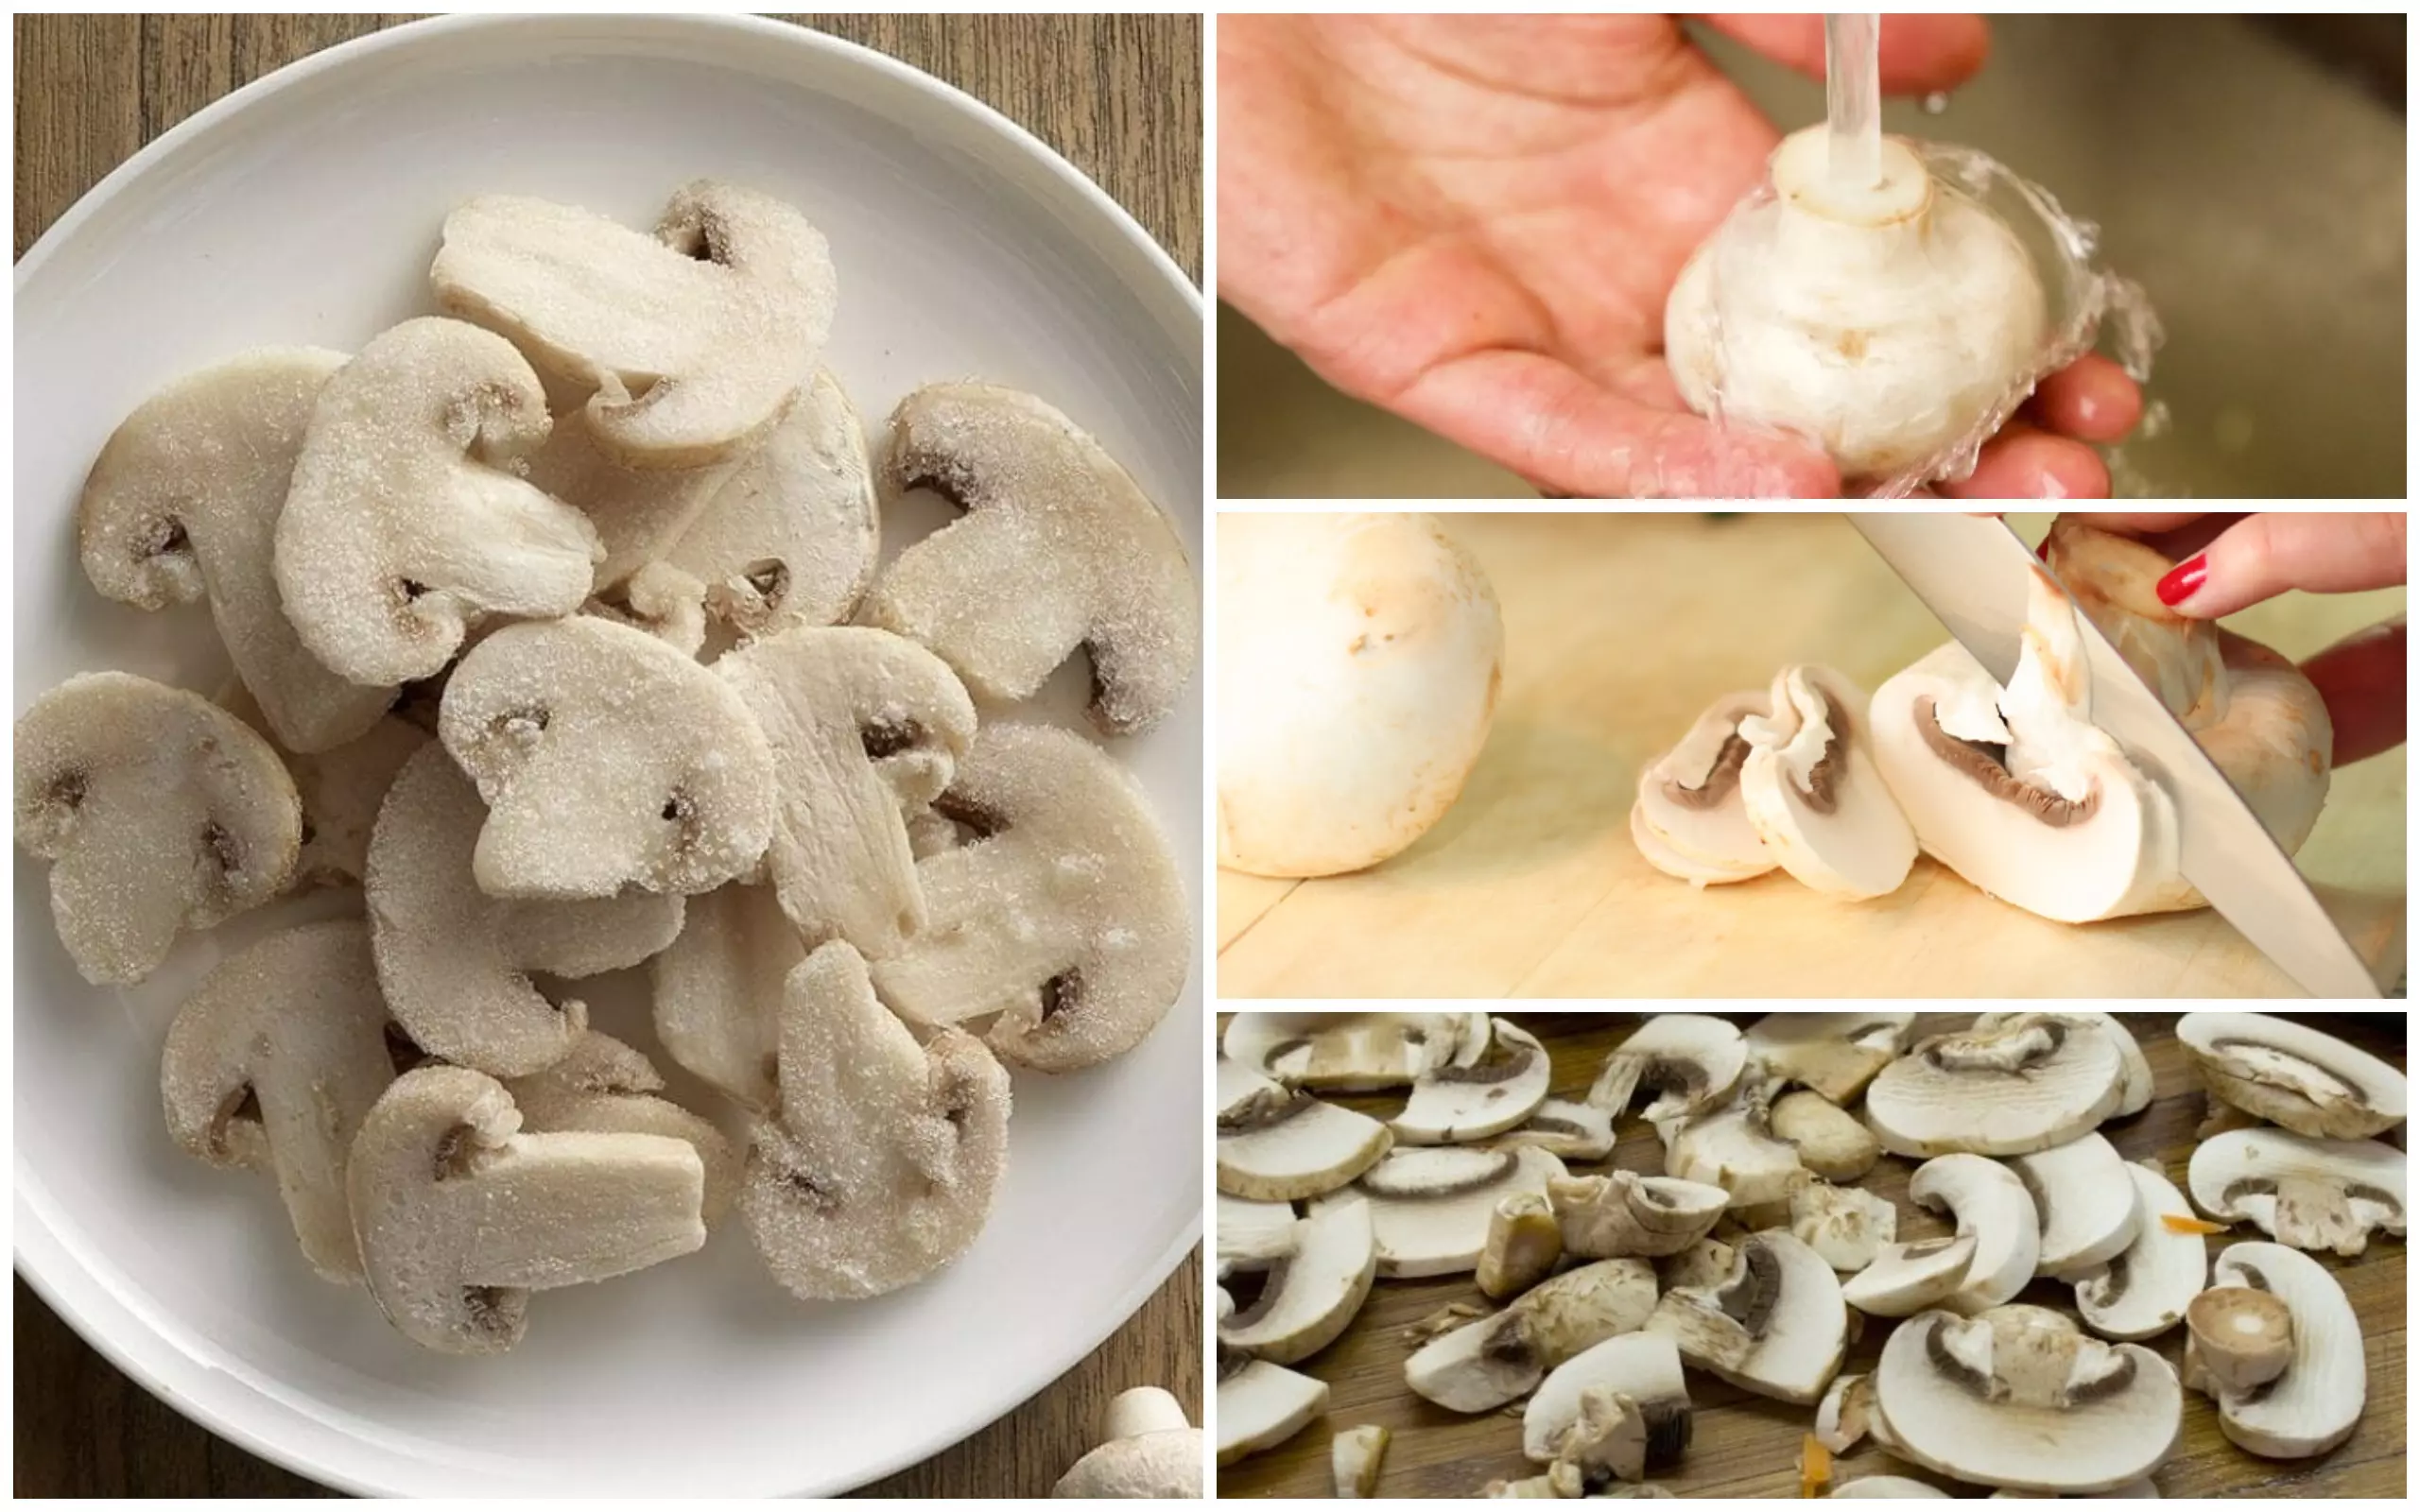 Как правильно заморозить свежие грибы вешенки на зиму: рецепты заморозки вешенок в морозилке